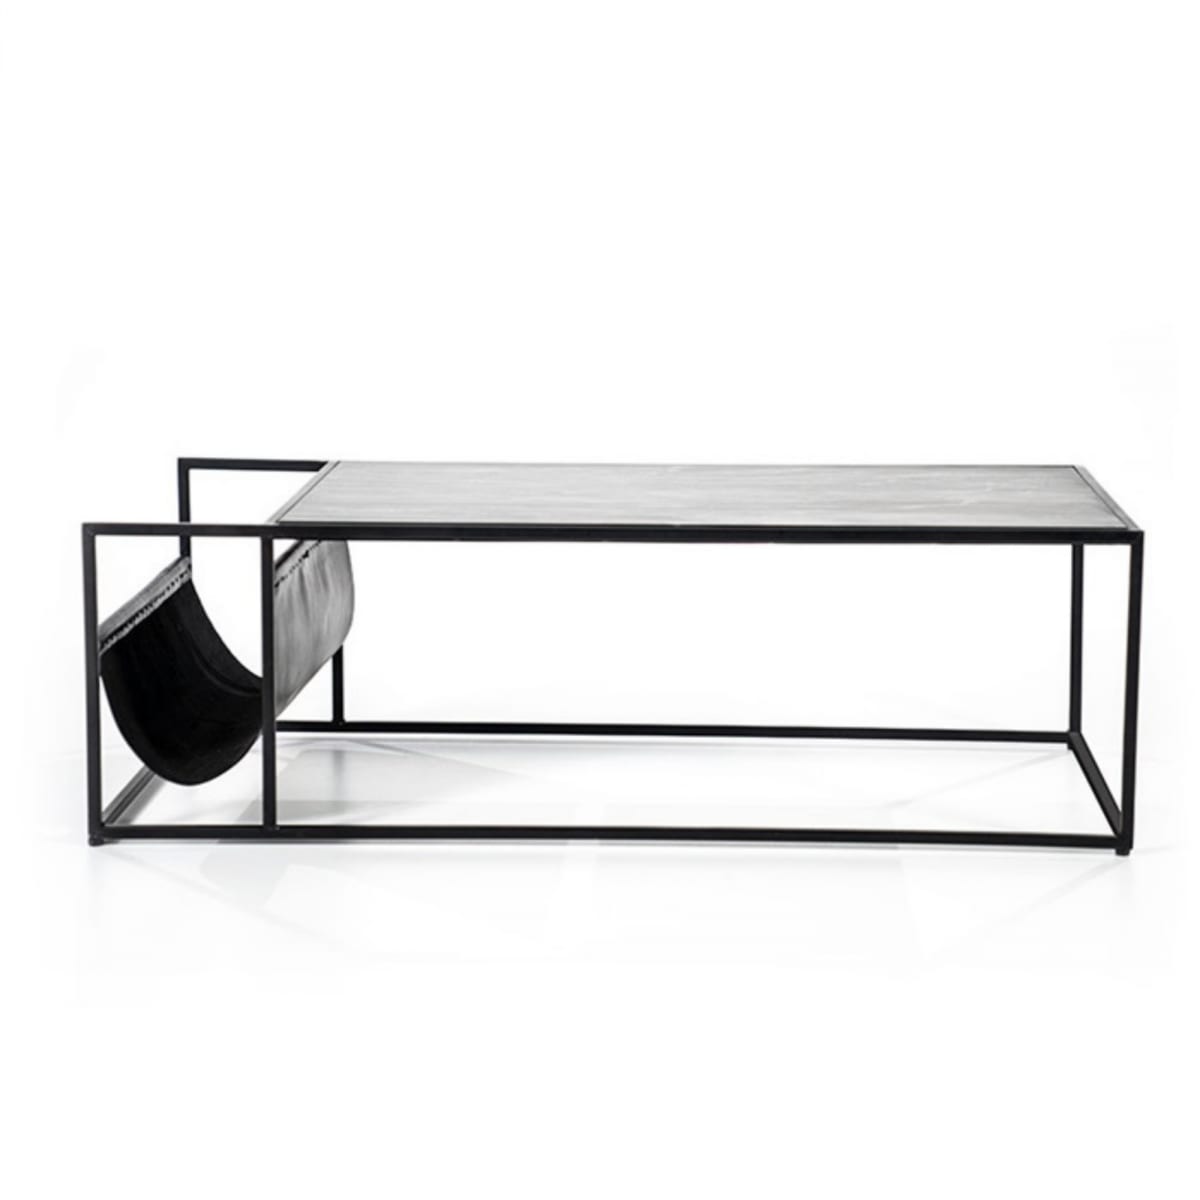 Table basse 120x60cm en marbre avec pochette en cuir noir